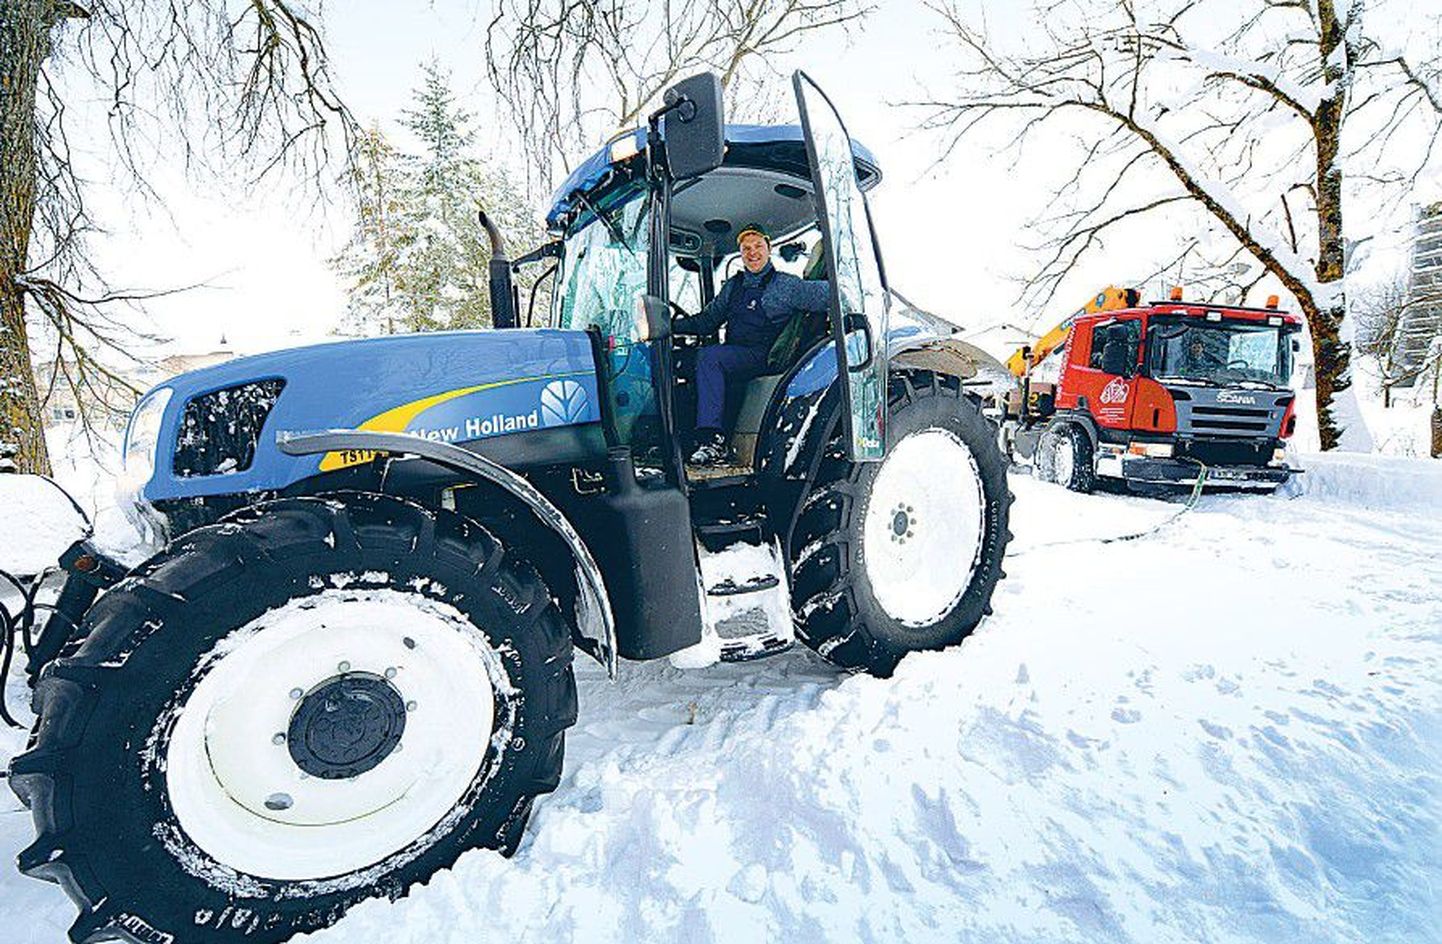 Вчера после обеда в поселке Ору в Харьюмаа Таави Лихт при помощи трактора вытащил из снега застрявший в придорожном сугробе грузовик.